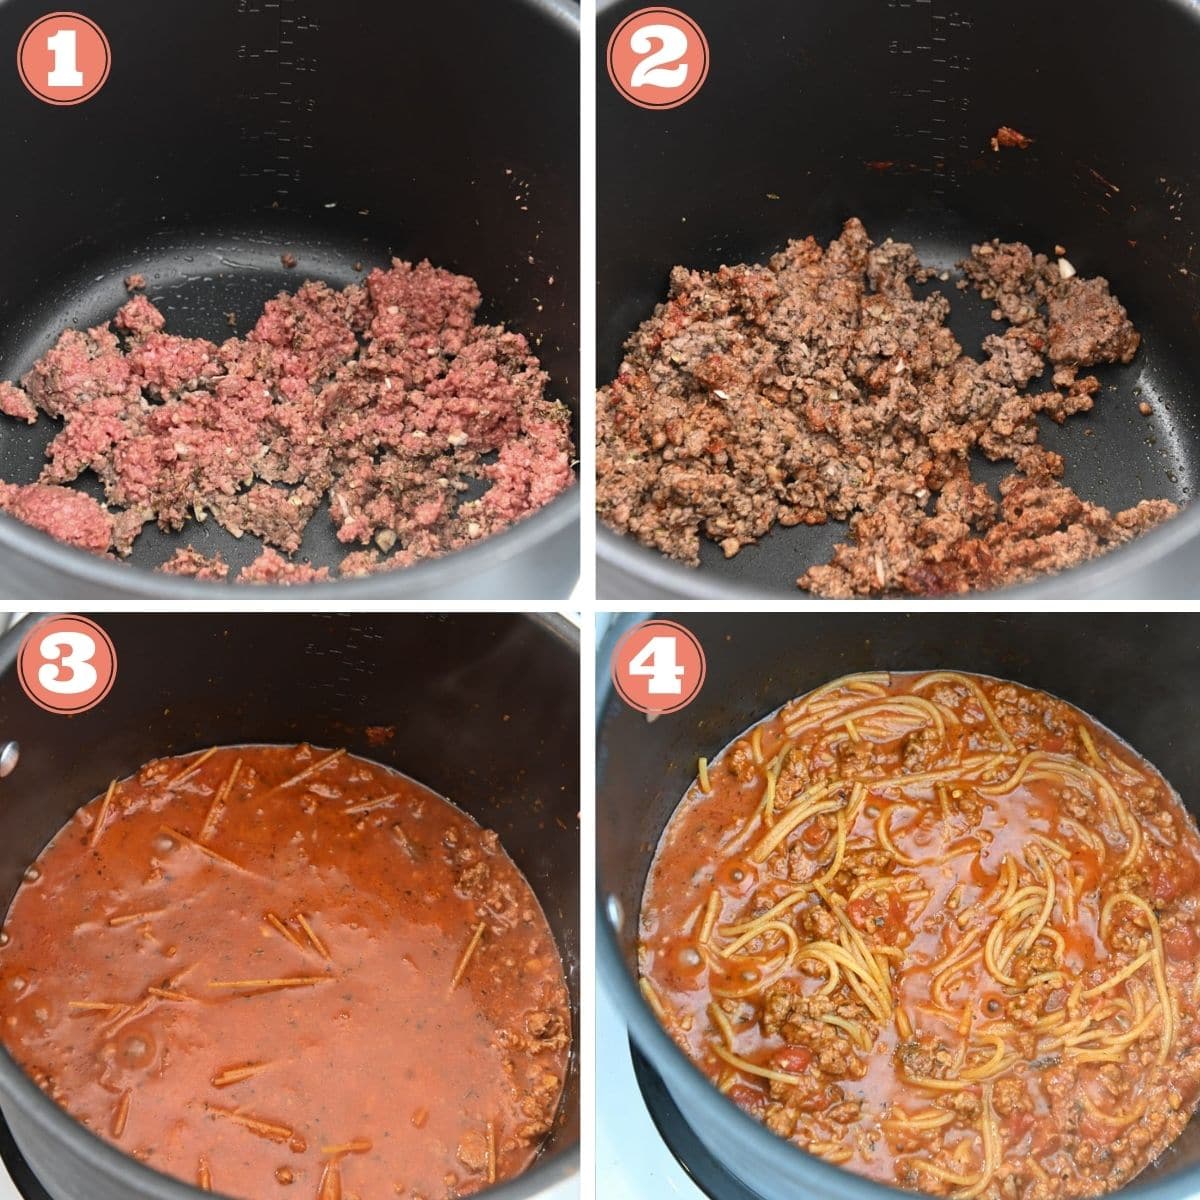 Steps 1 through 4 to make spaghetti